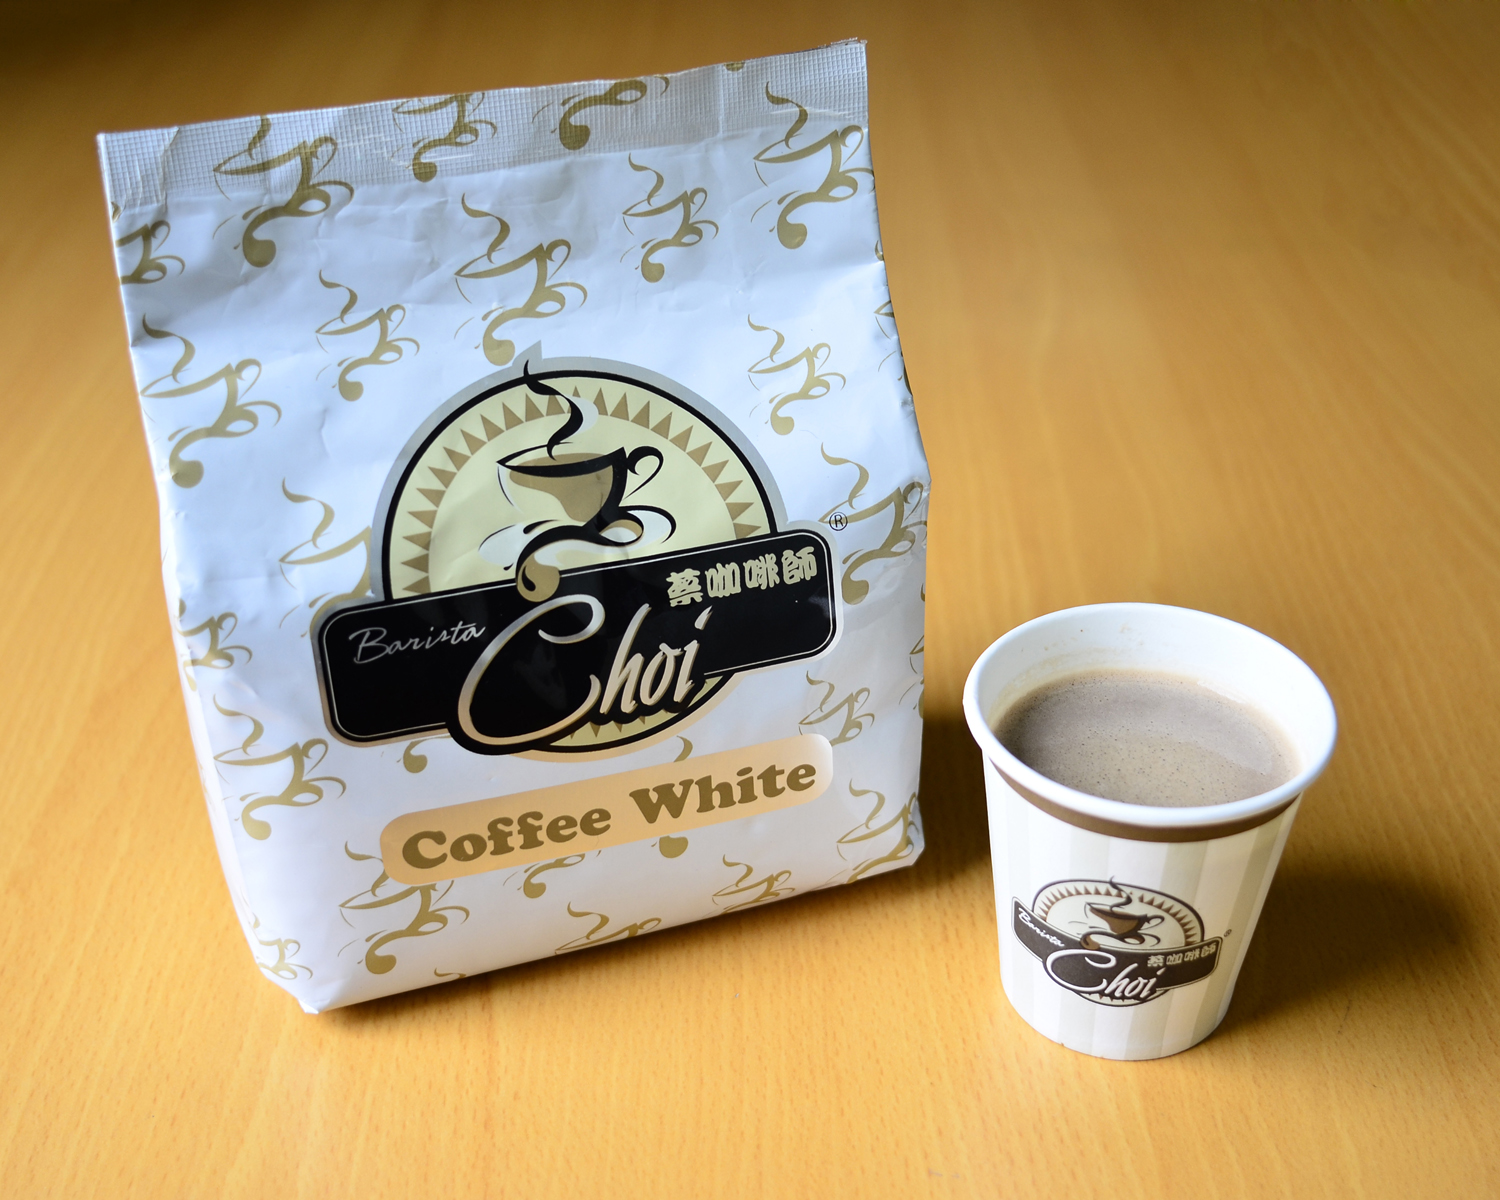 Coffee white